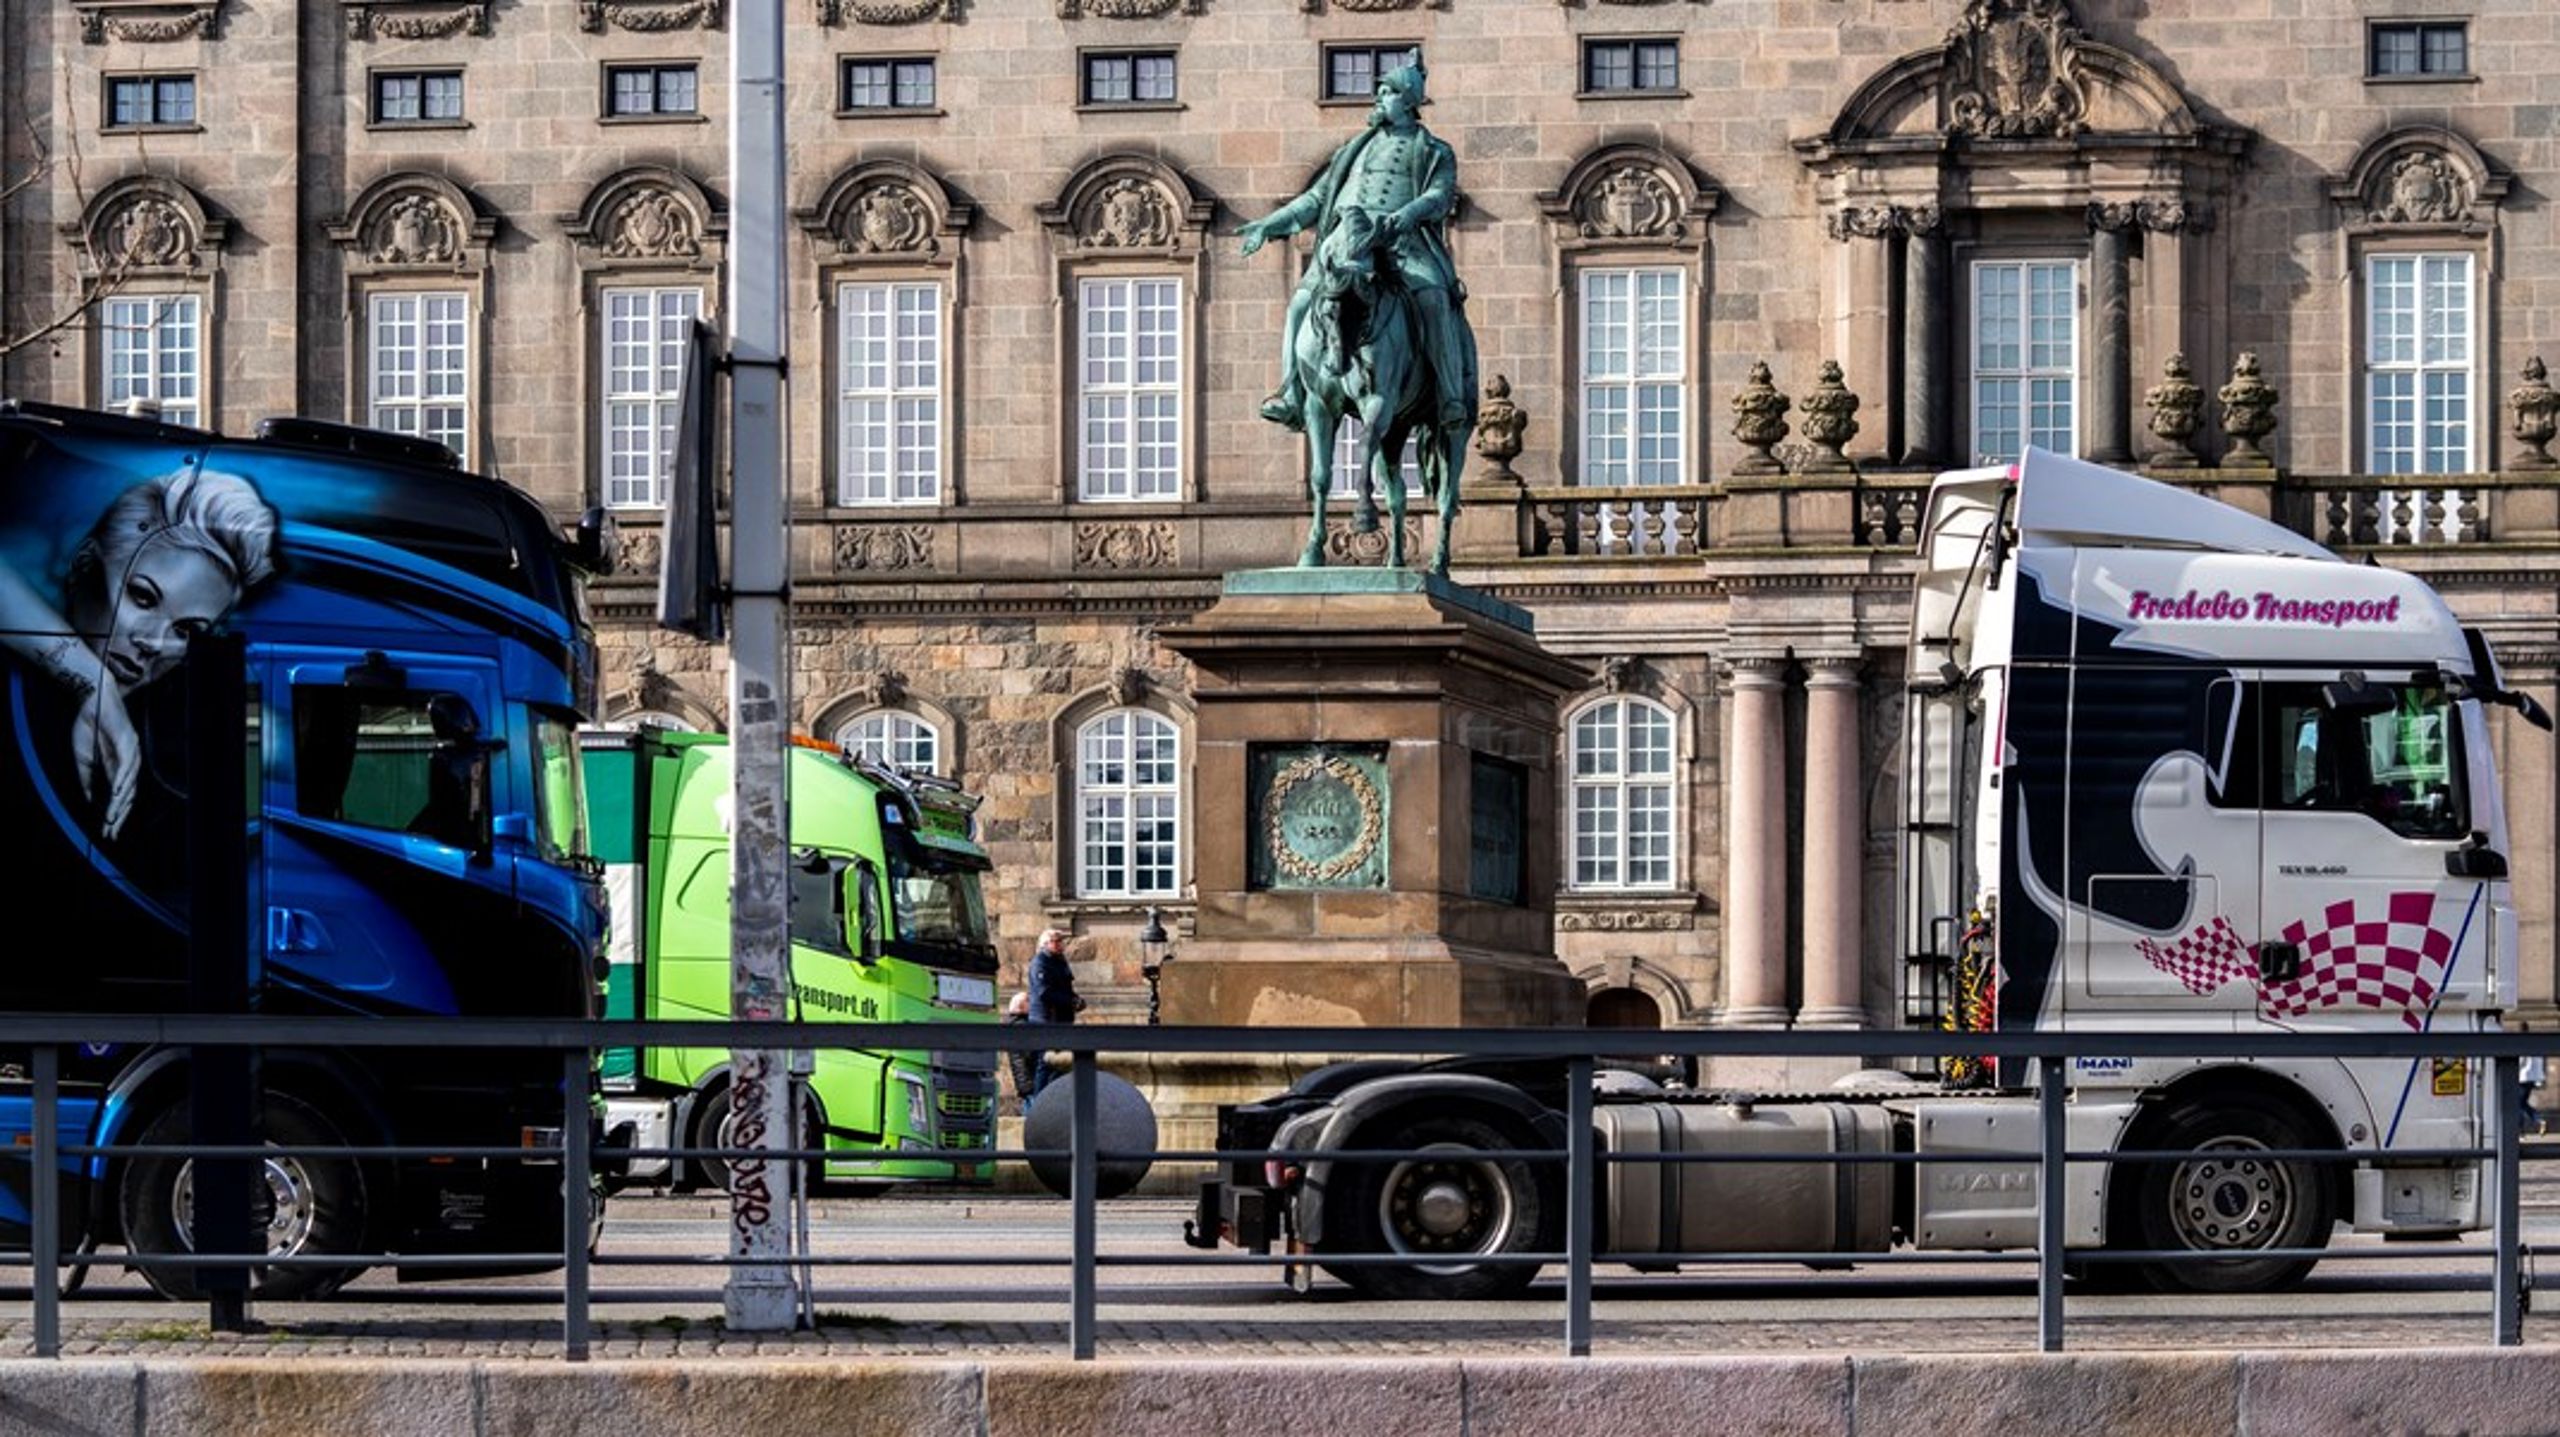 I påskeugen så vi helt forventelige protester fra lastbilchauffører og vognmænd ved Christiansborg.
Transportbranchen har brug for langsigtede rammevilkår, før udviklingen for alvor kan tage fart, skriver&nbsp;Christian Halleløv.